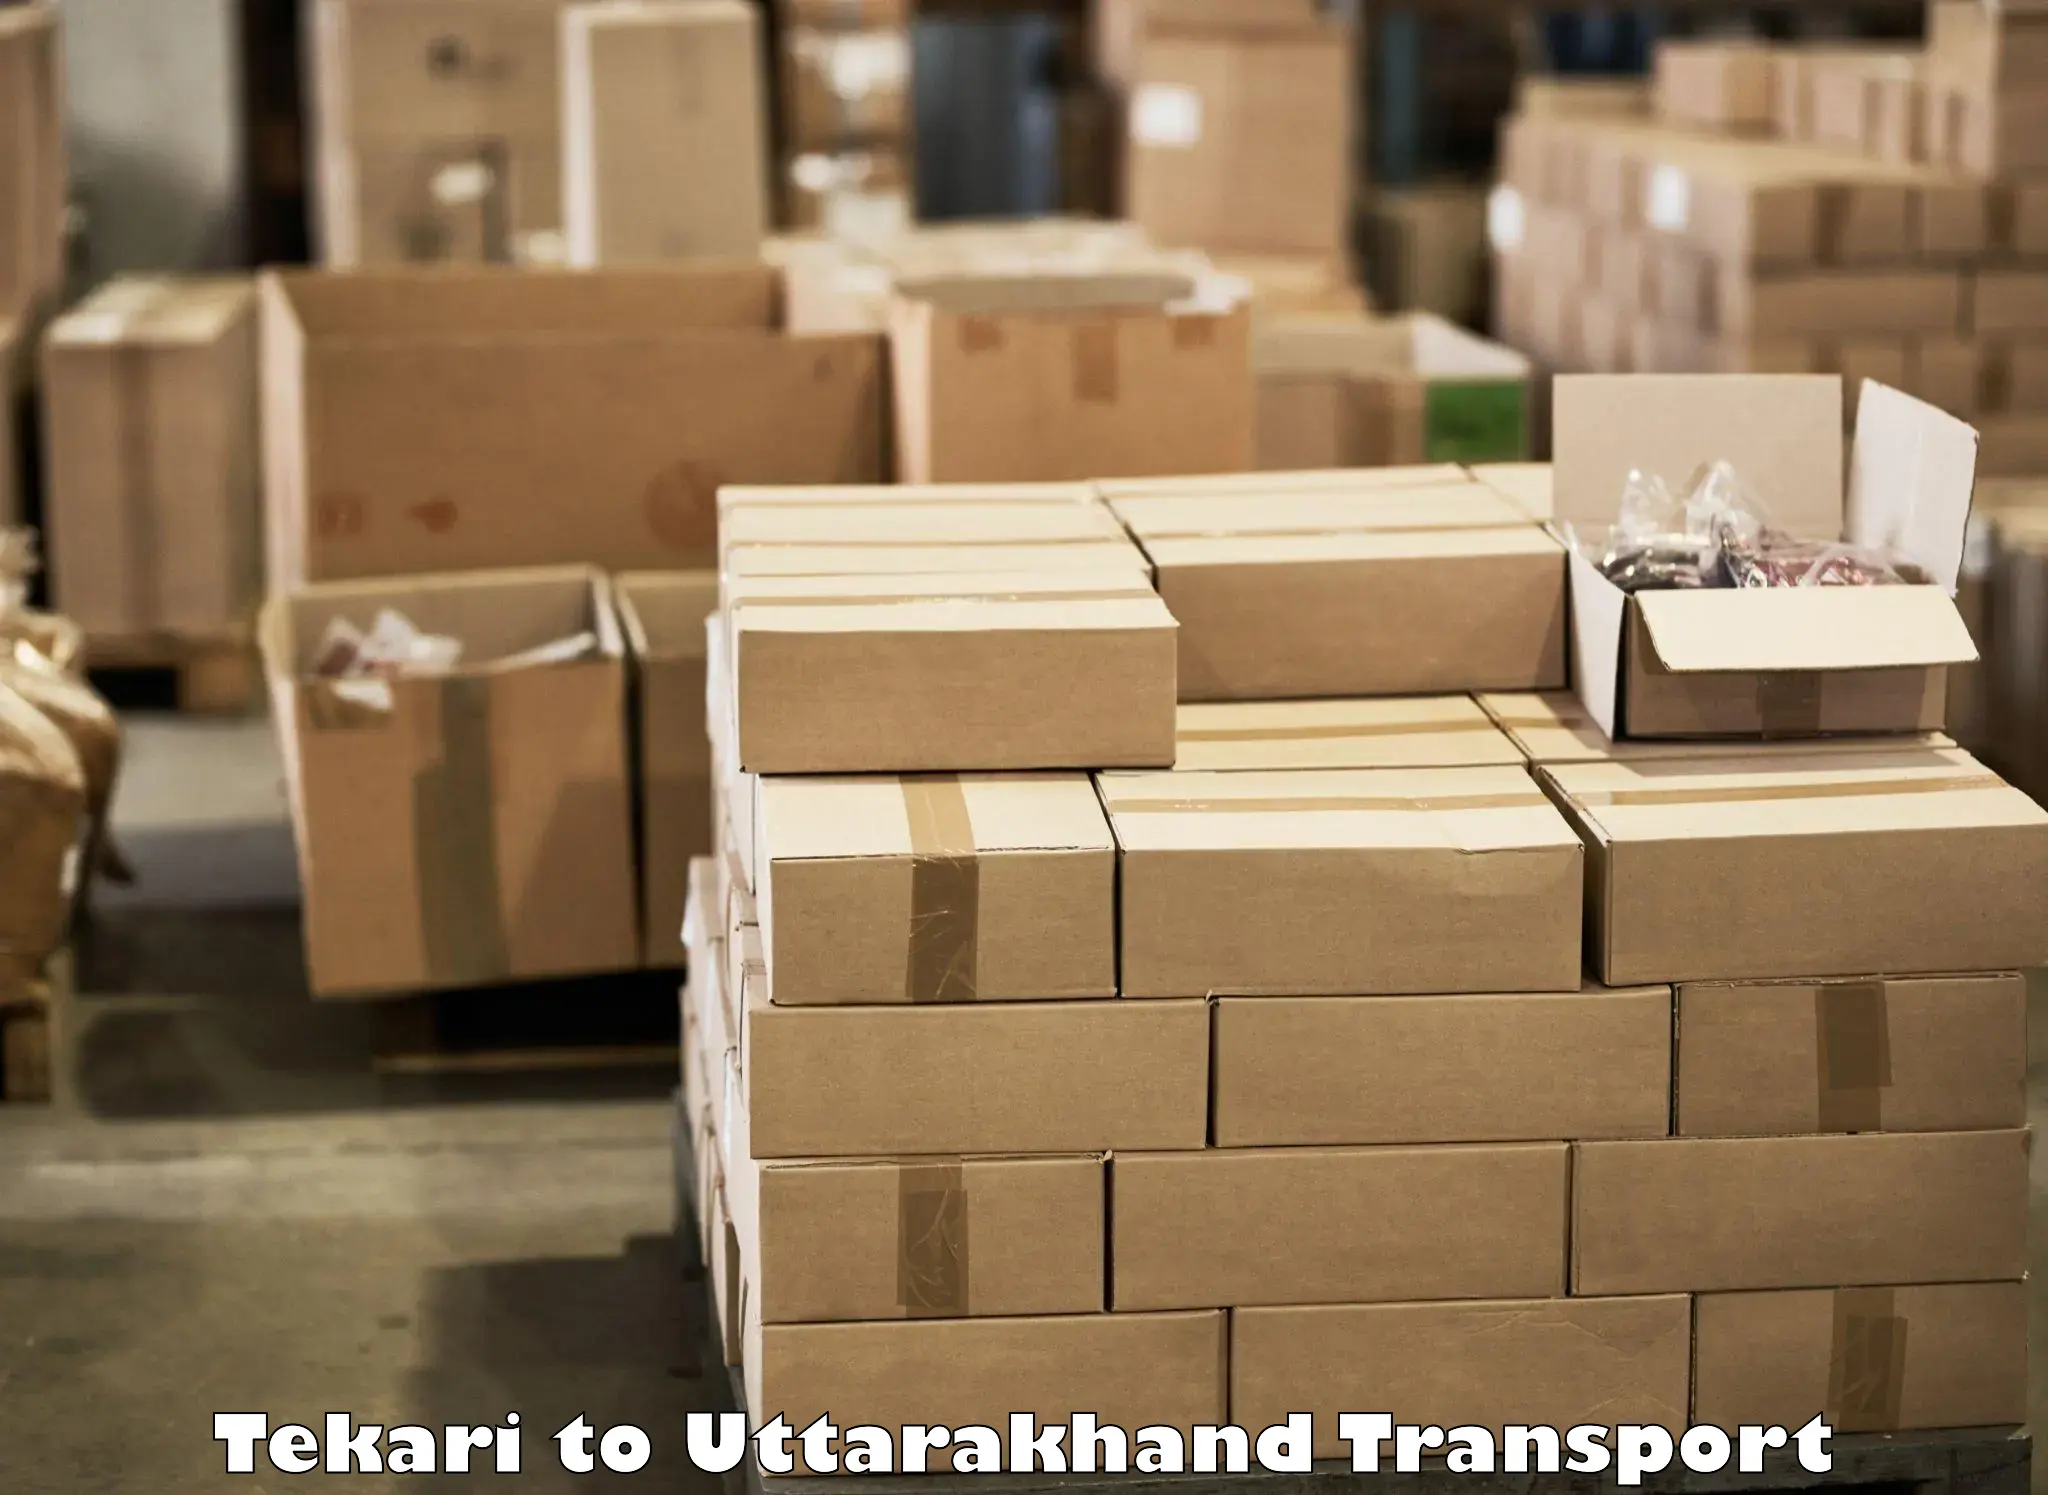 Commercial transport service Tekari to Uttarakhand